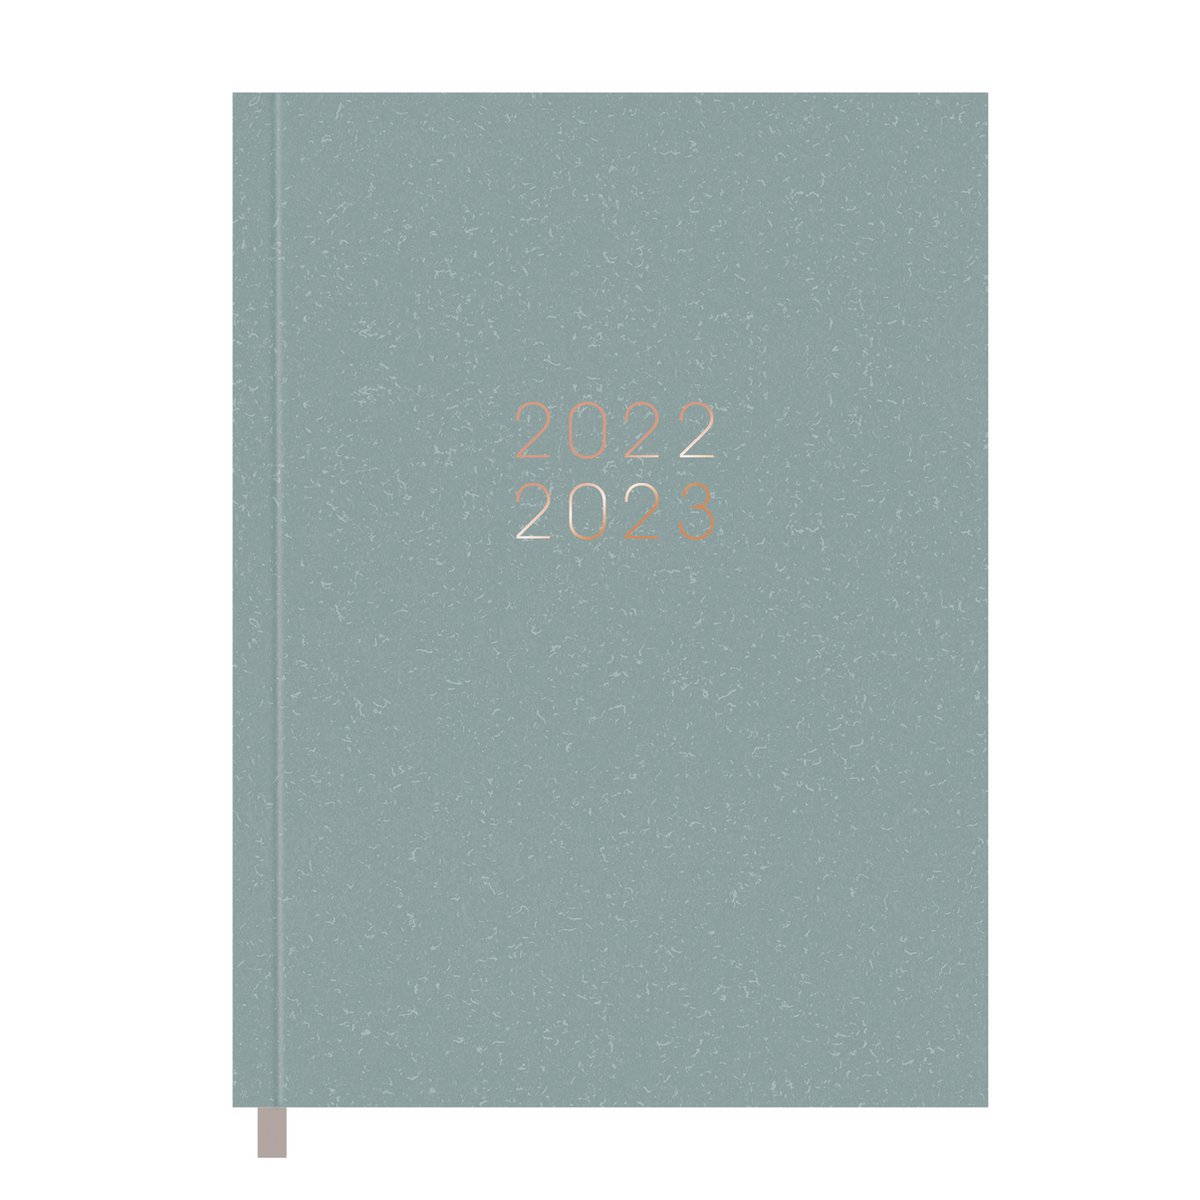 Hobbit - Agenda Pocket A6 - 2022/2023 - Grijsgroen - Week per 2 pagina's - Hardcover - 14x10,5cm (A6)